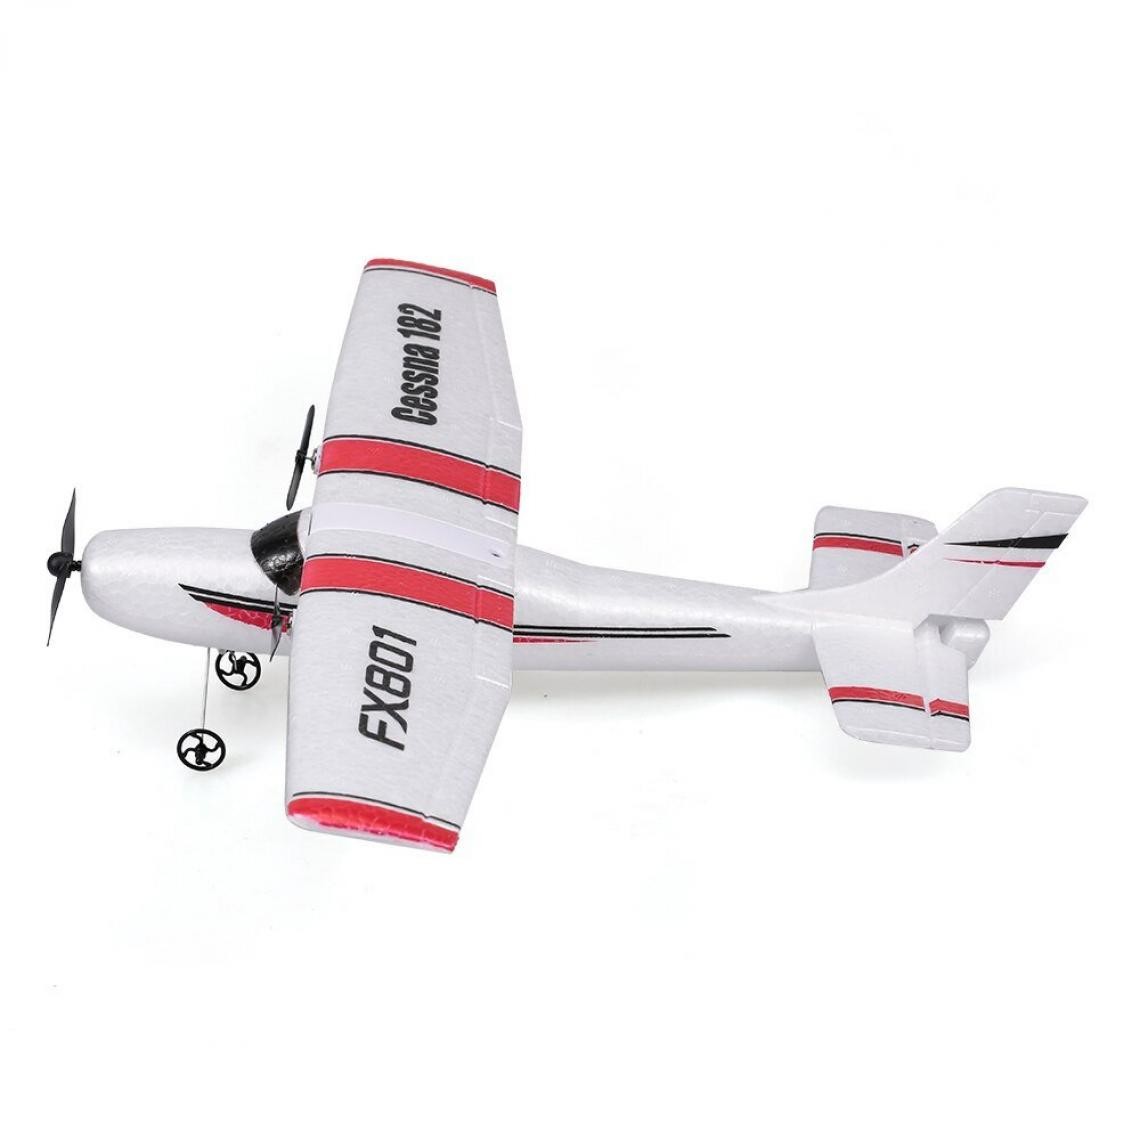 Universal - Avion FX801 Cessna 182 DIY RC Planar 2,4 GHz pour enfants | Avion RC (blanc) - Hélicoptères RC